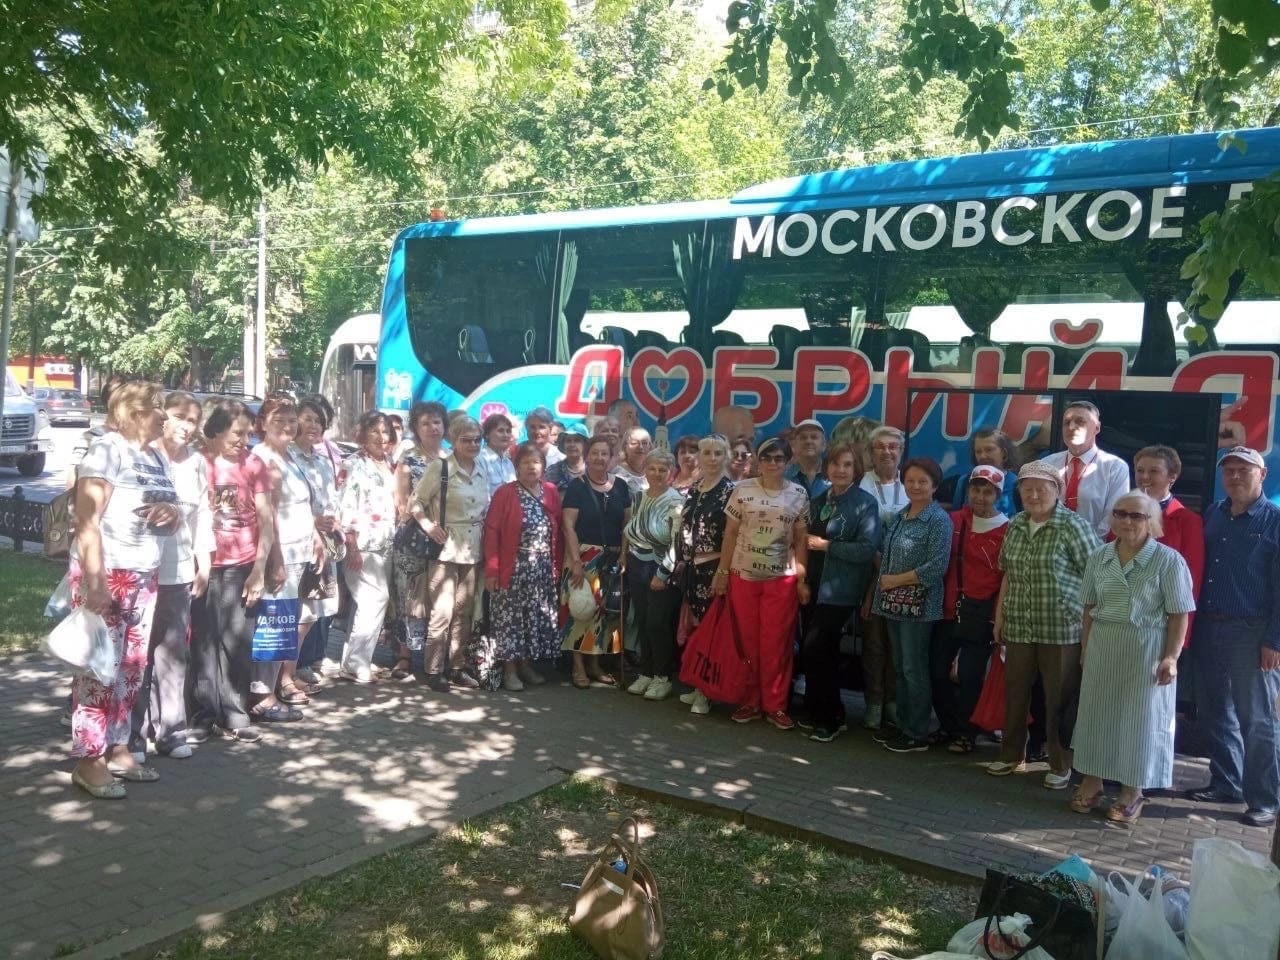 Долголетие добрый автобус. Добрый автобус Московское долголетие. Московское долголетие экскурсии для пенсионеров добрый автобус. Московское долголетие. Экскурсия на добром автобусе.